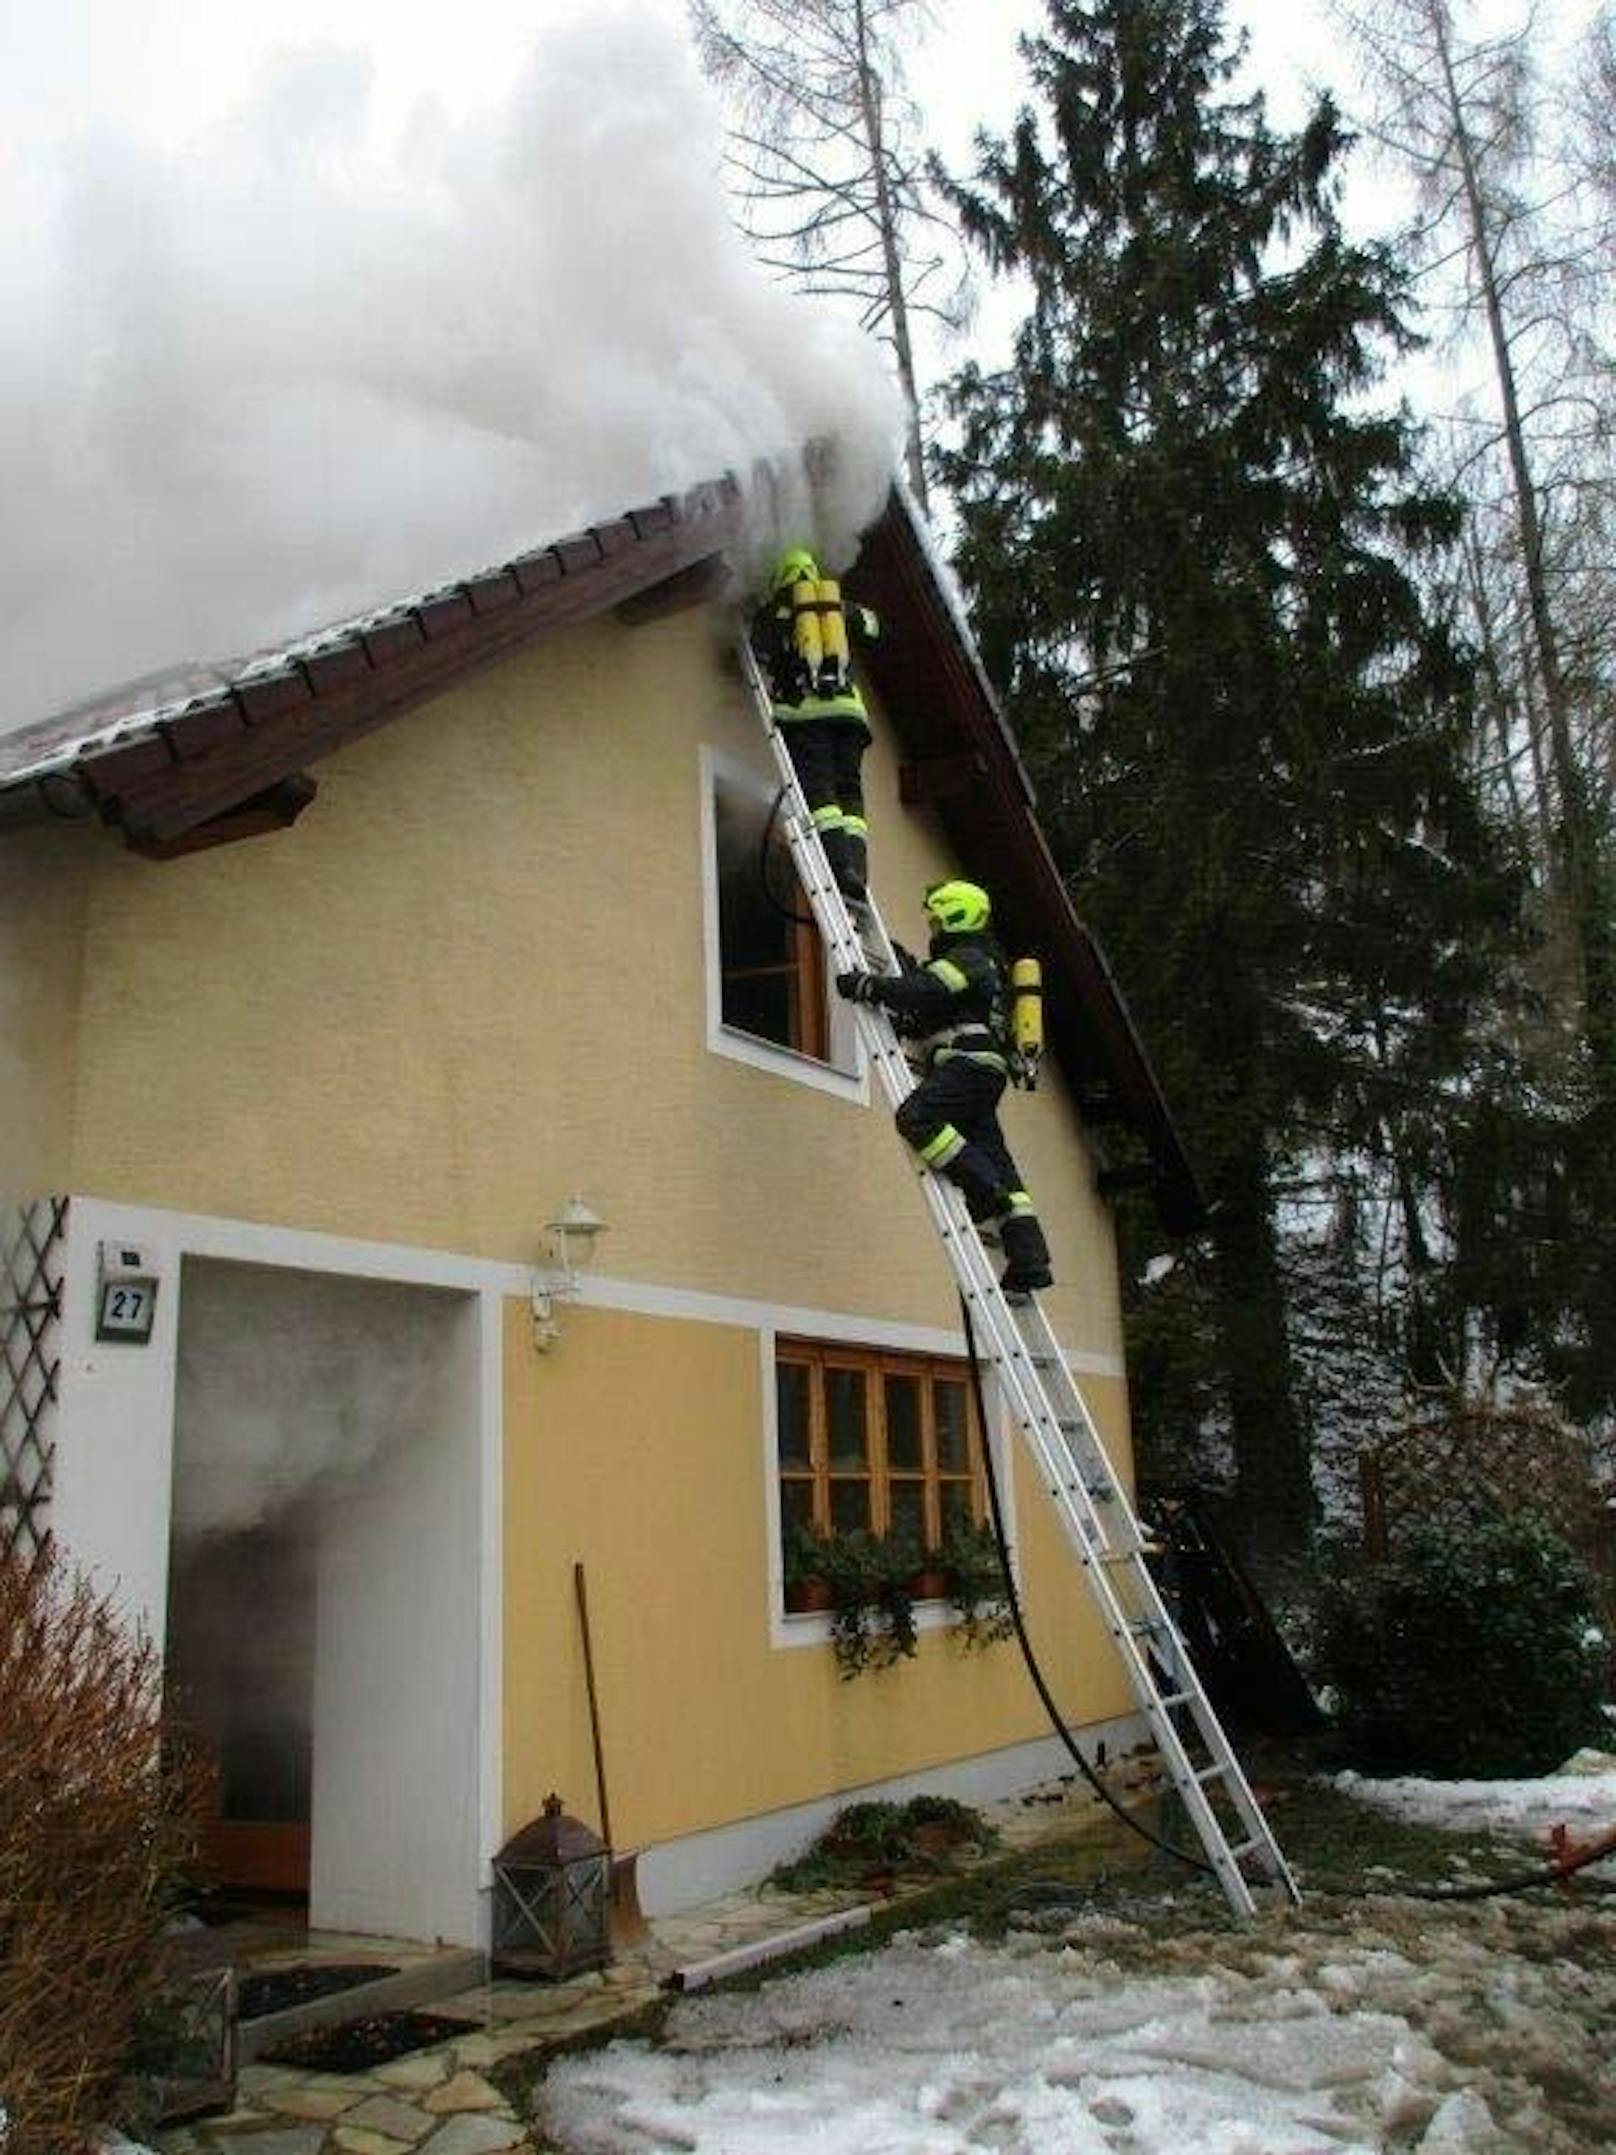 Das Haus wurde schwer beschädigt, der Besitzer konnte sich noch rechtzeitig ins Freie retten und blieb unverletzt.